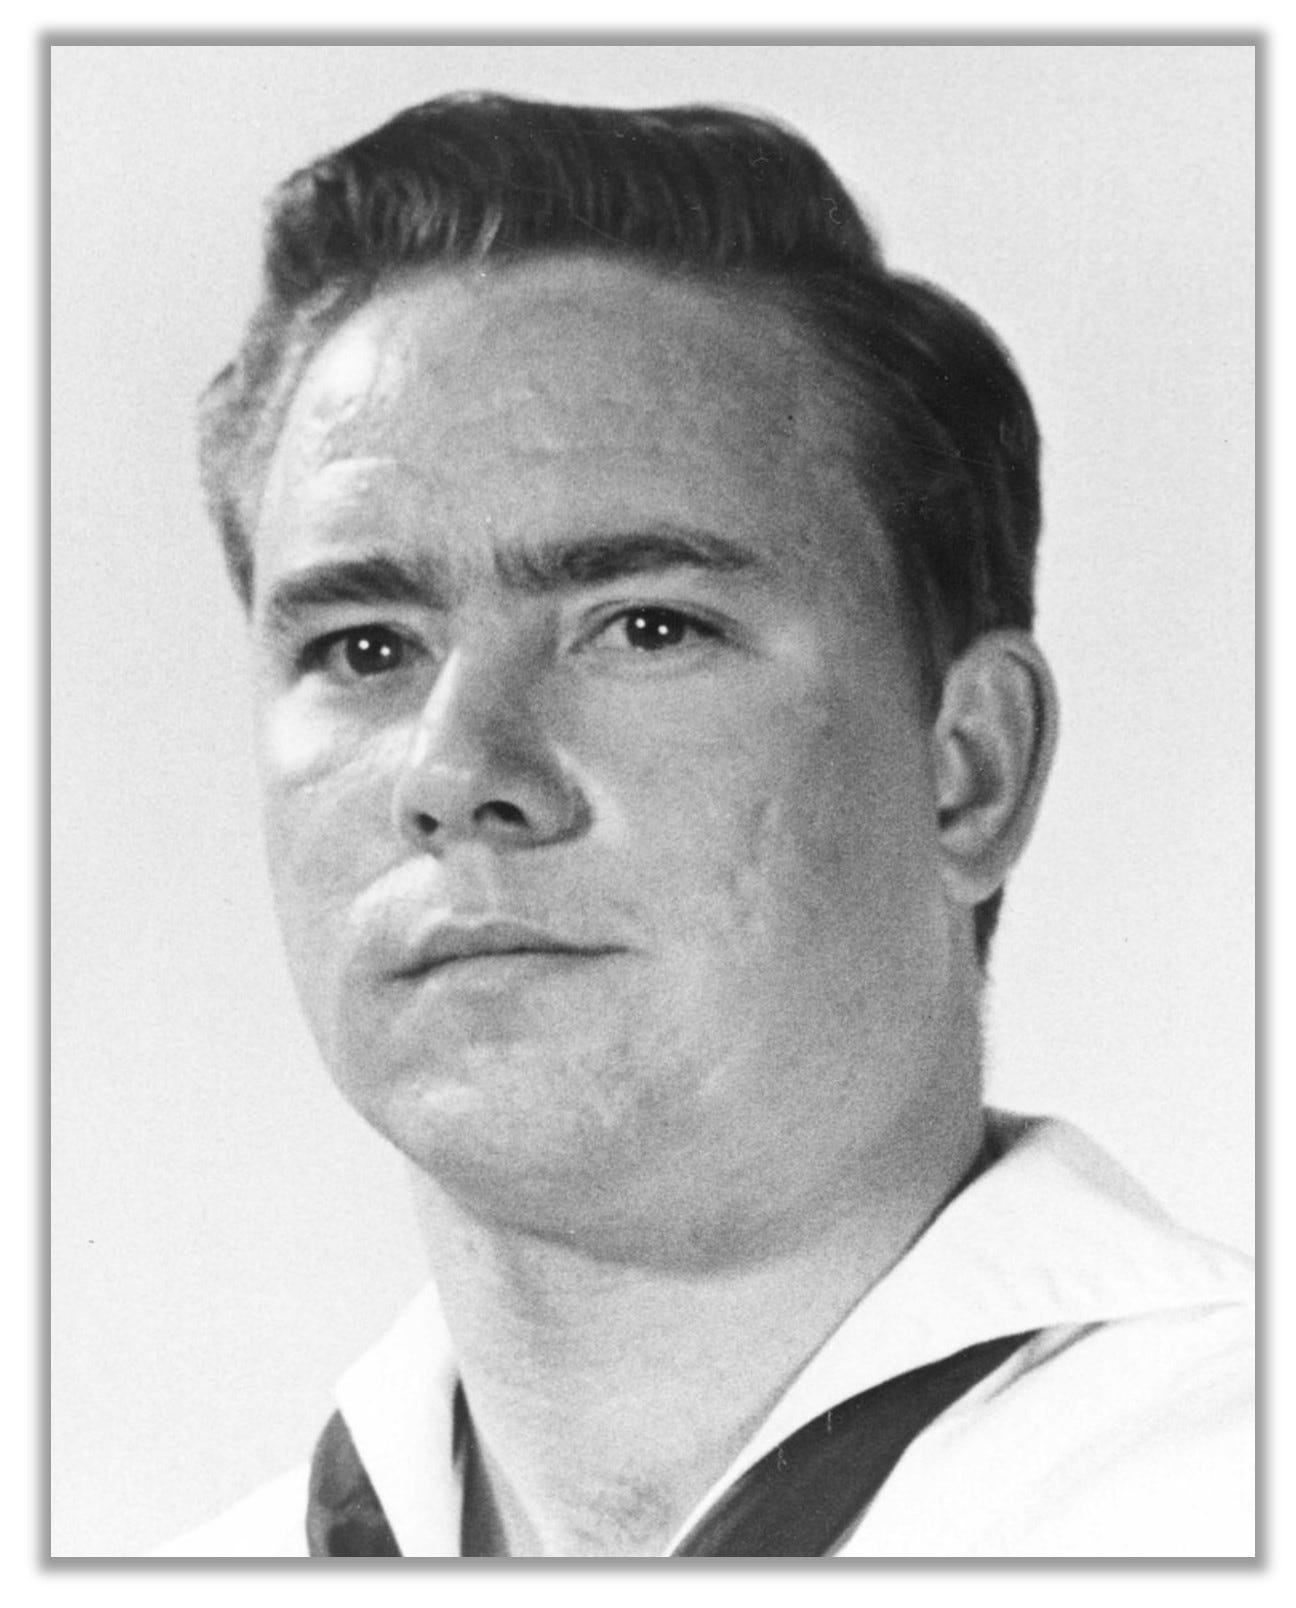 Headshot of Donald Ballard in a sailor's uniform.